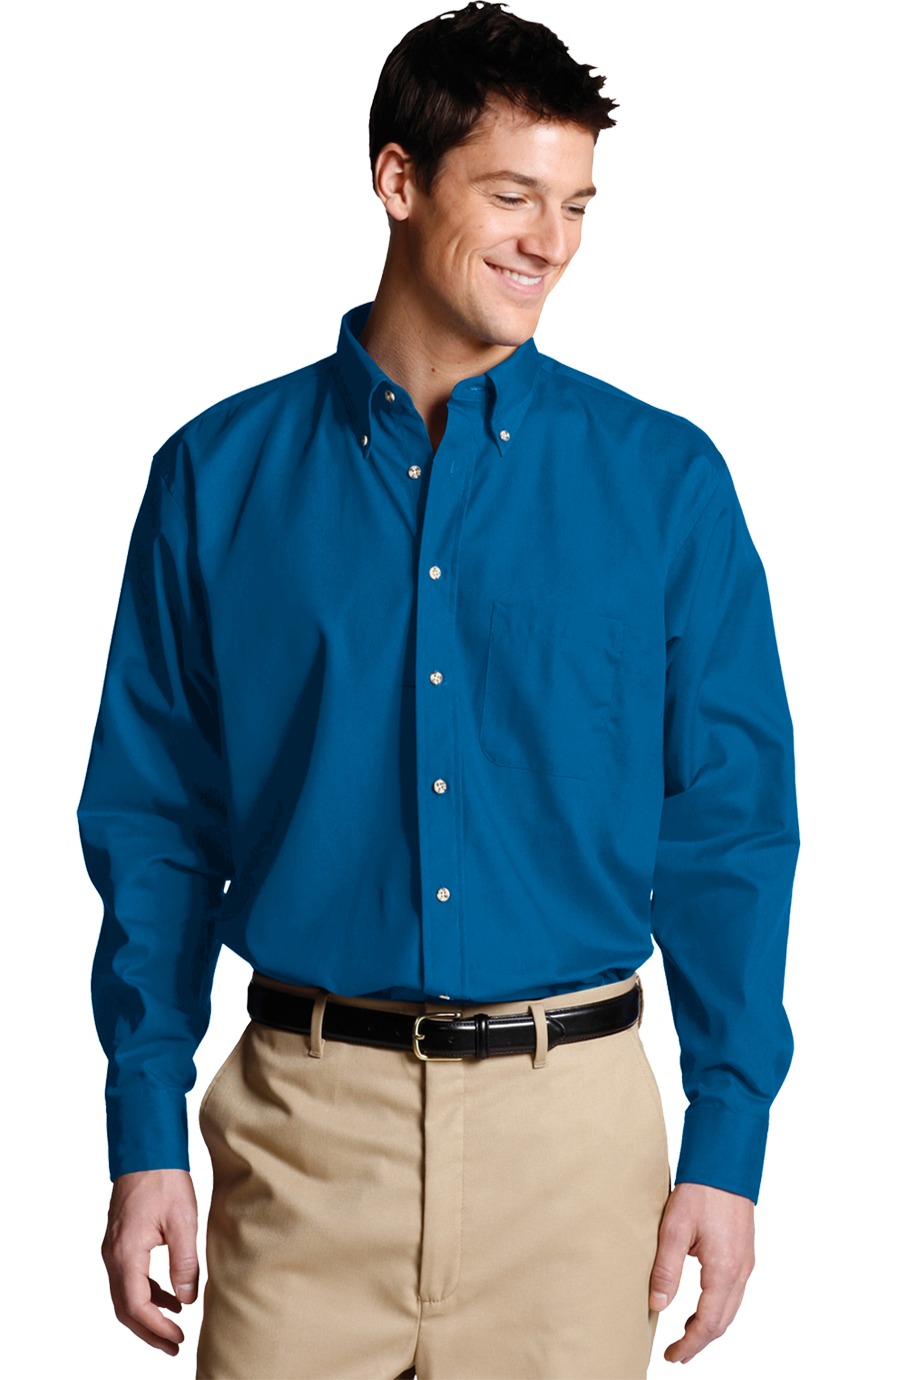 Edwards Garment 1280 - Men's Easy Care Poplin Shirt